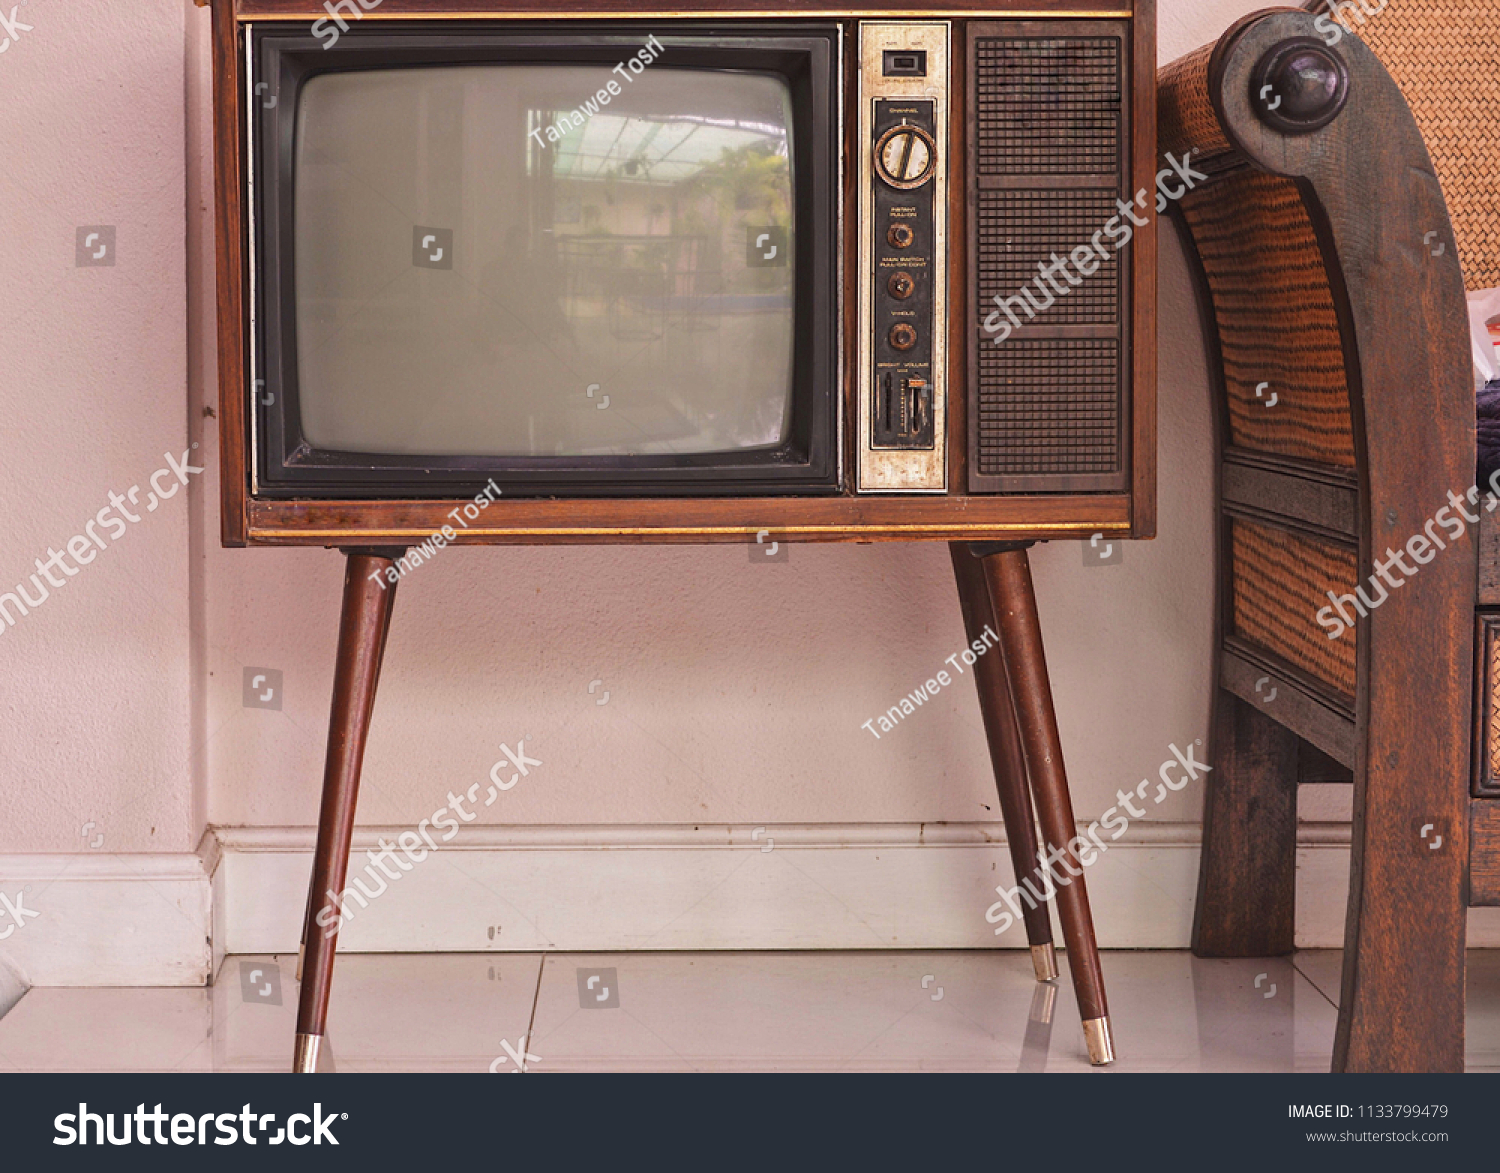 Первый телевизор в мире